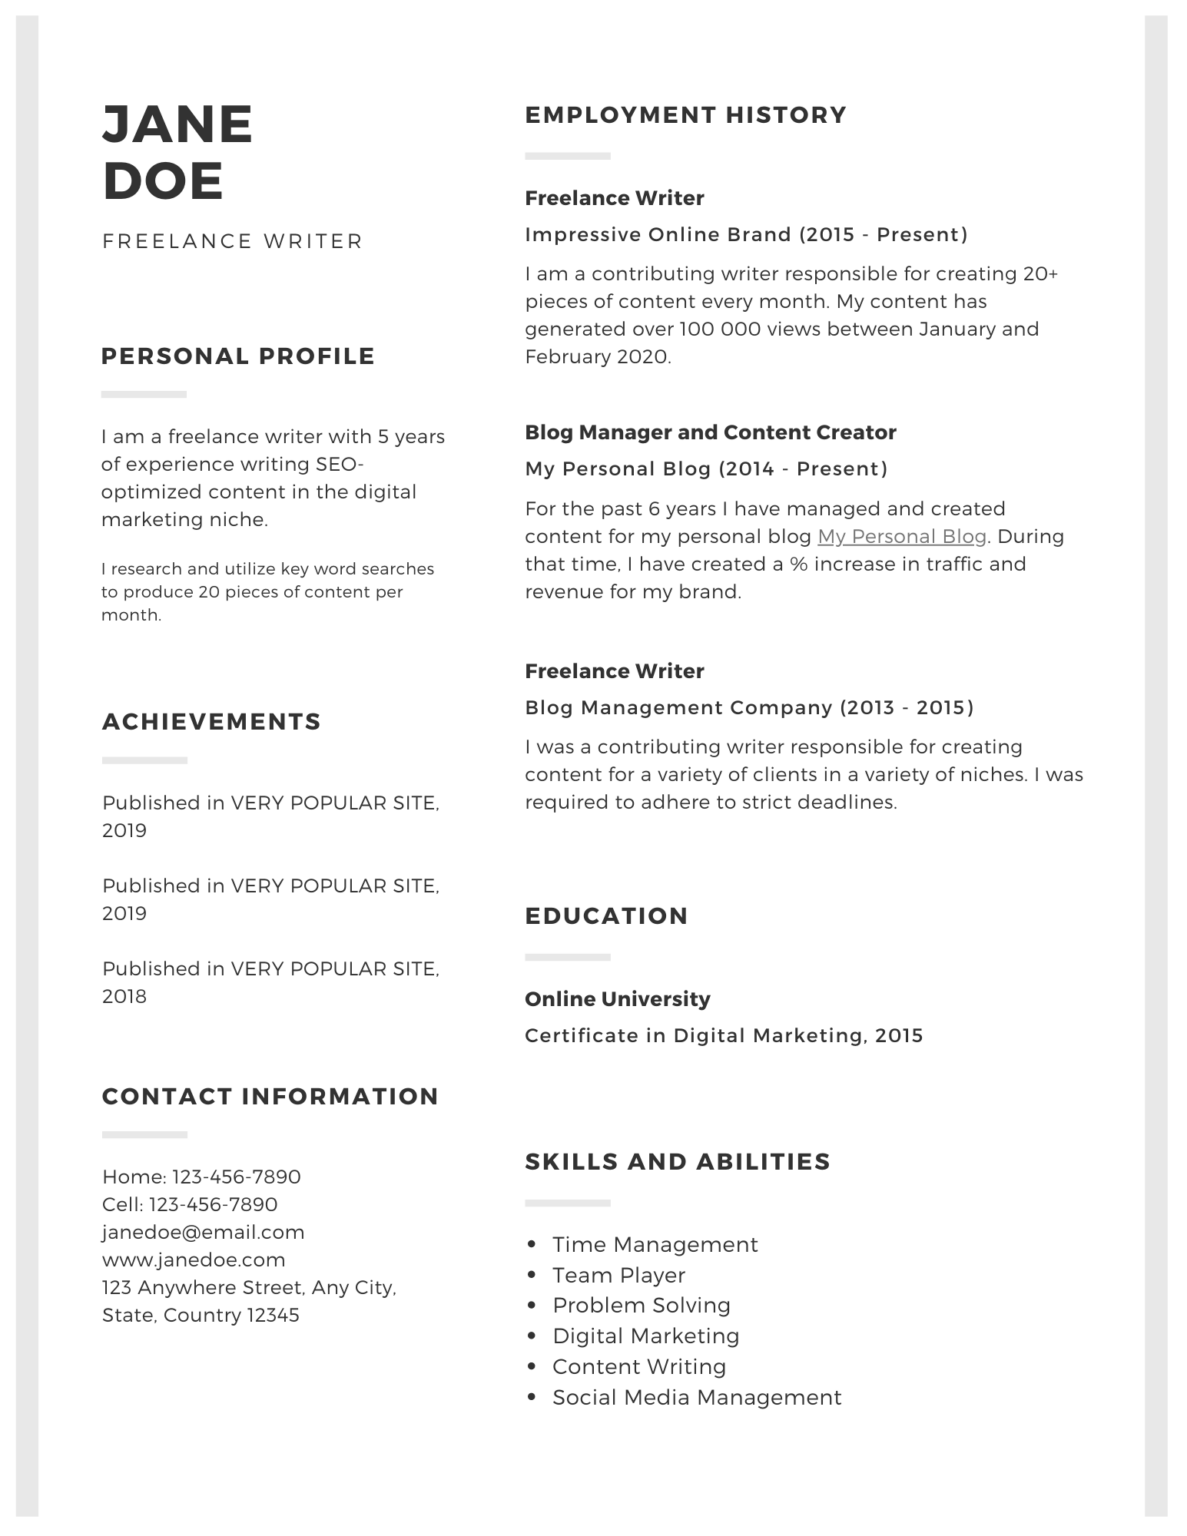 resume for freelance writer sample